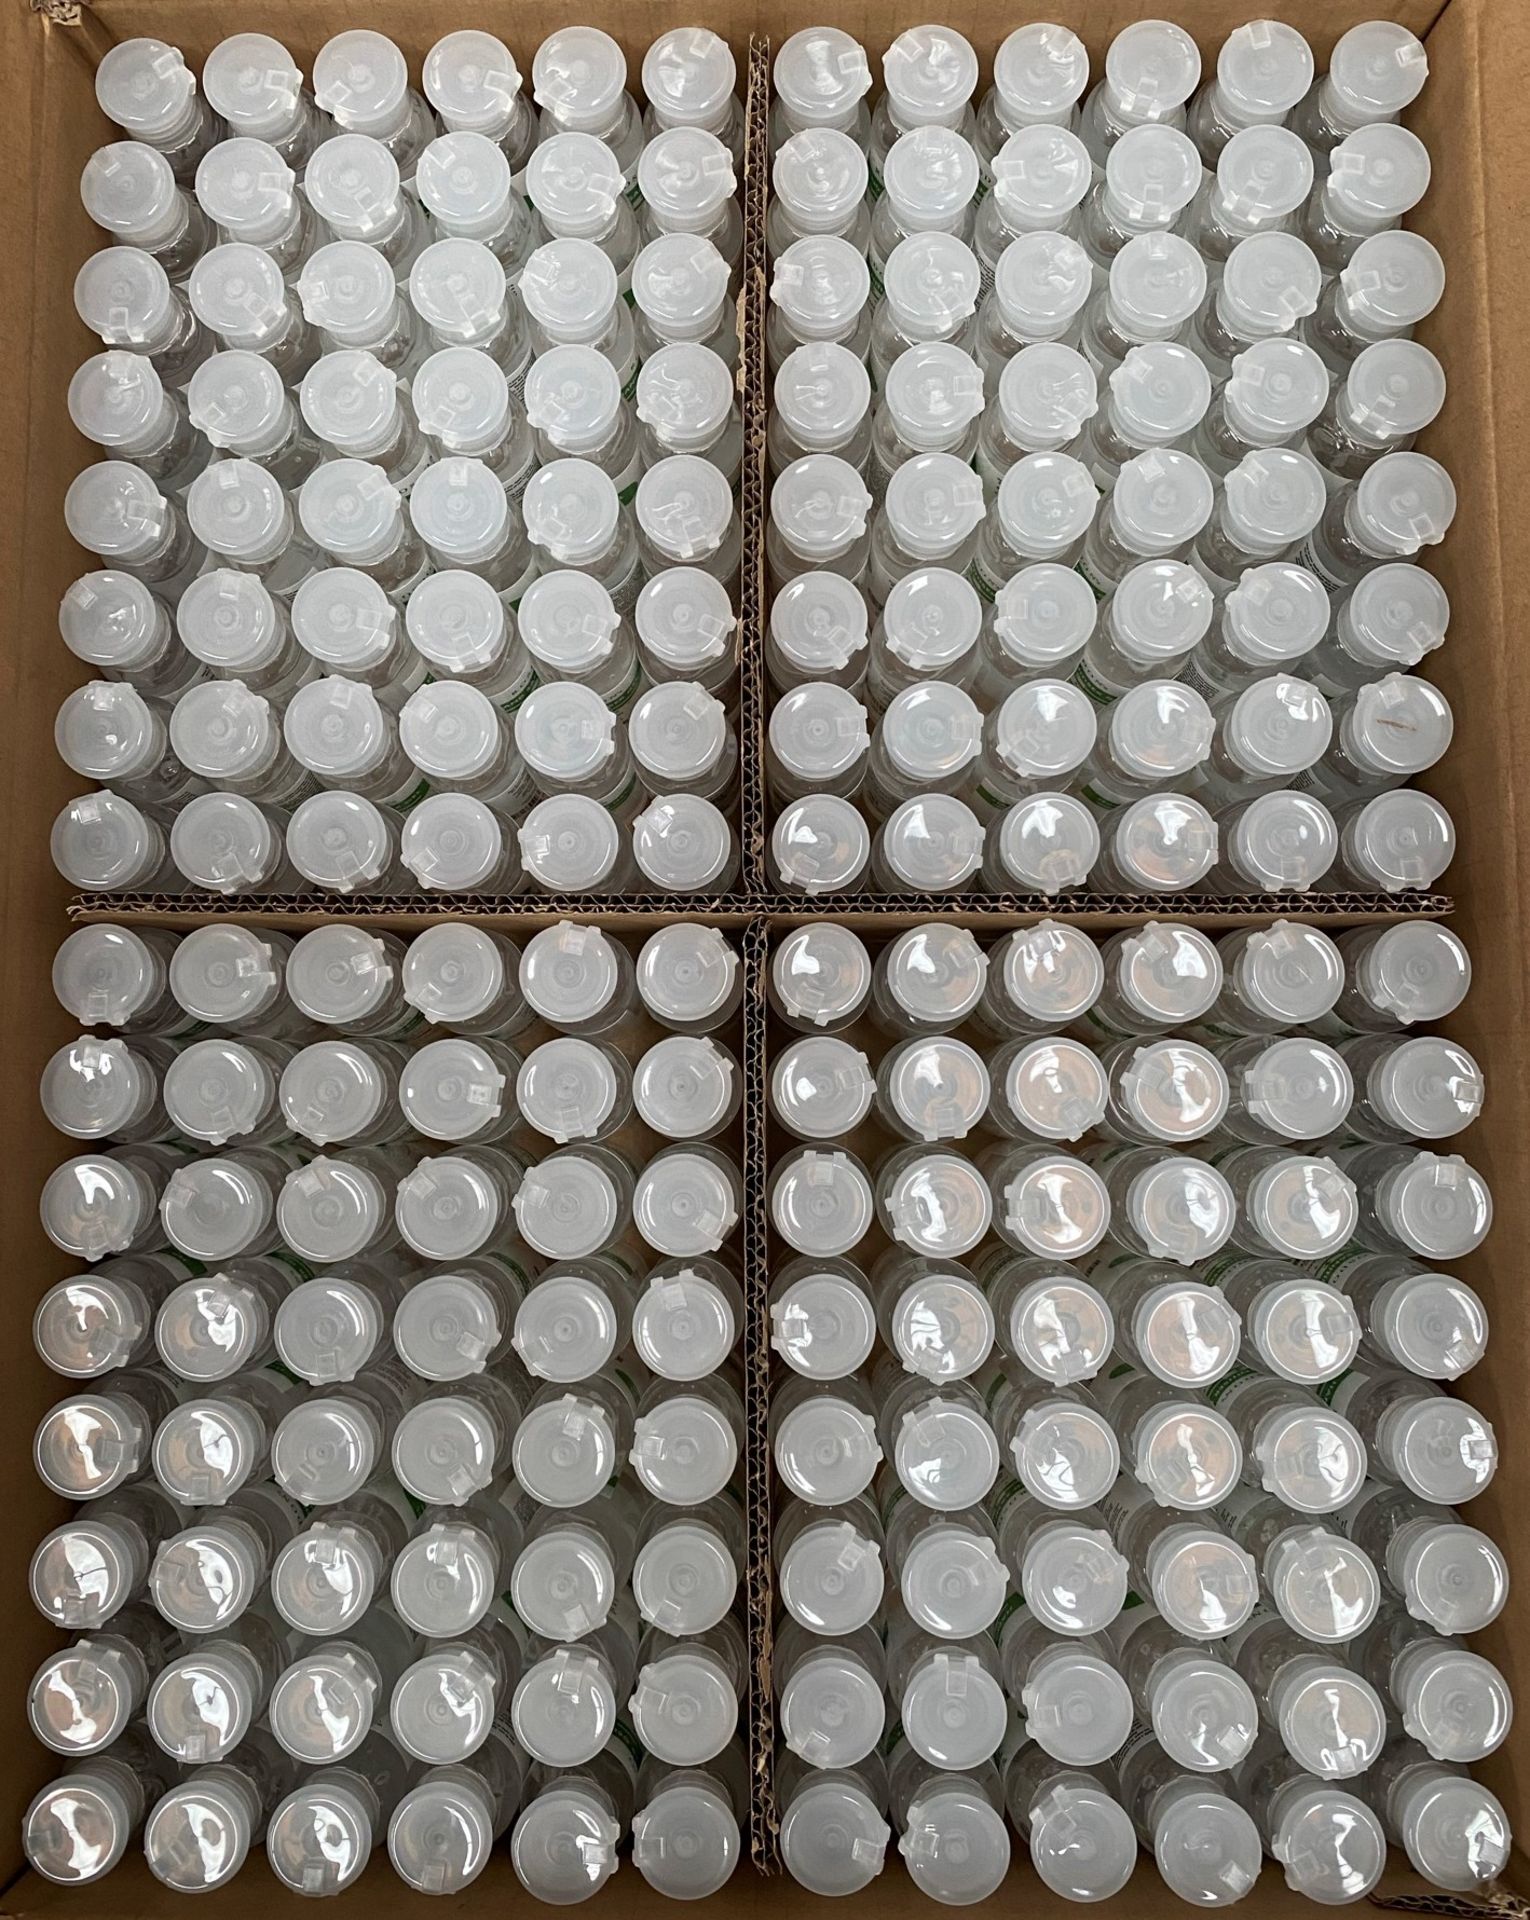 384 x 50ml flip top bottles of Rosdon Group UK hand sanitiser (Labelled clear plastic bottles) - 1 - Image 4 of 5